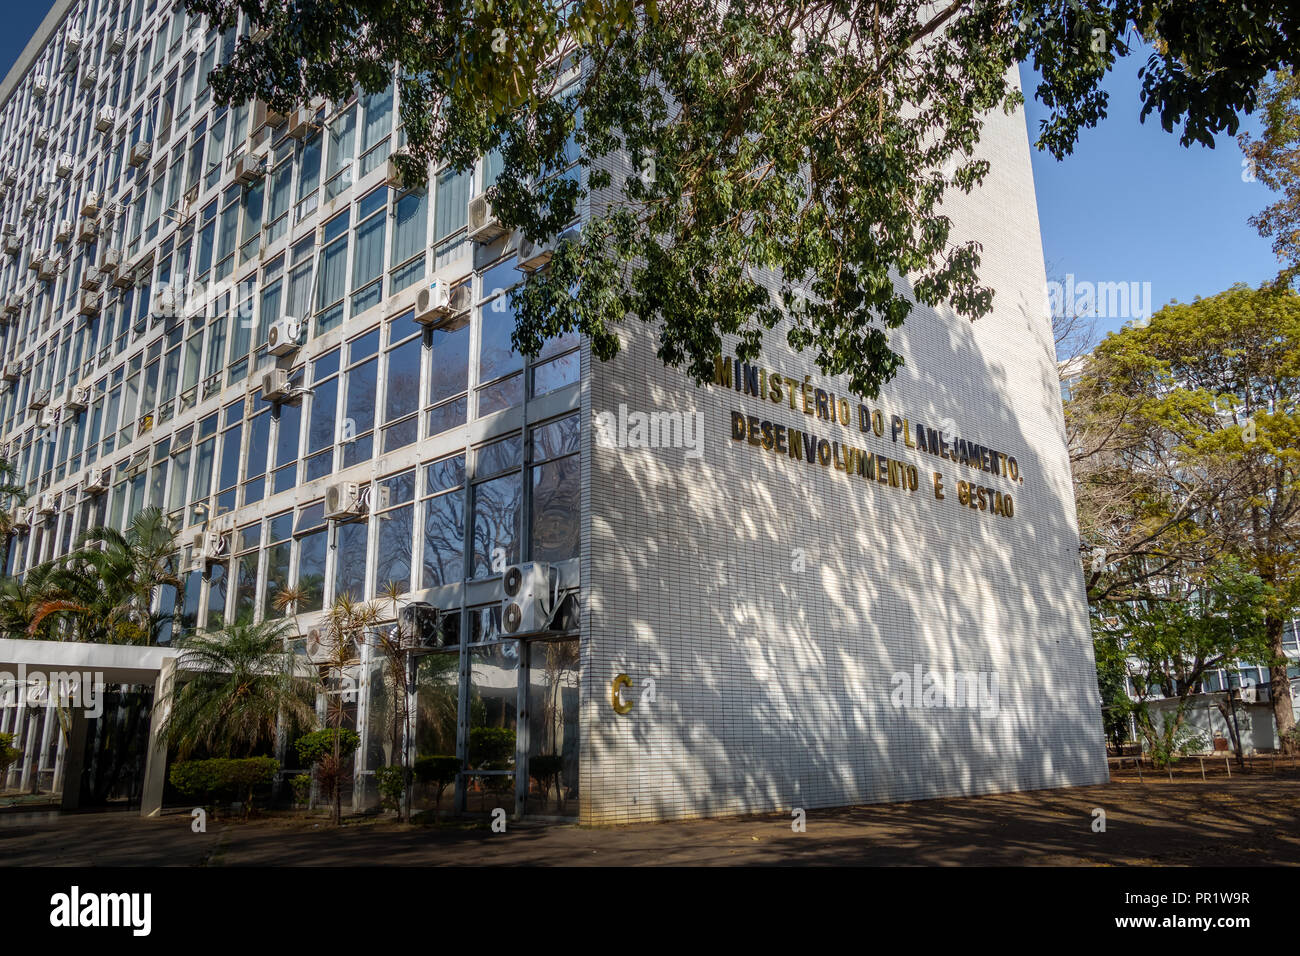 Ministerium für Planung, Entwicklung und Management Gebäude - Brasilia, Distrito Federal, Brasilien Stockfoto